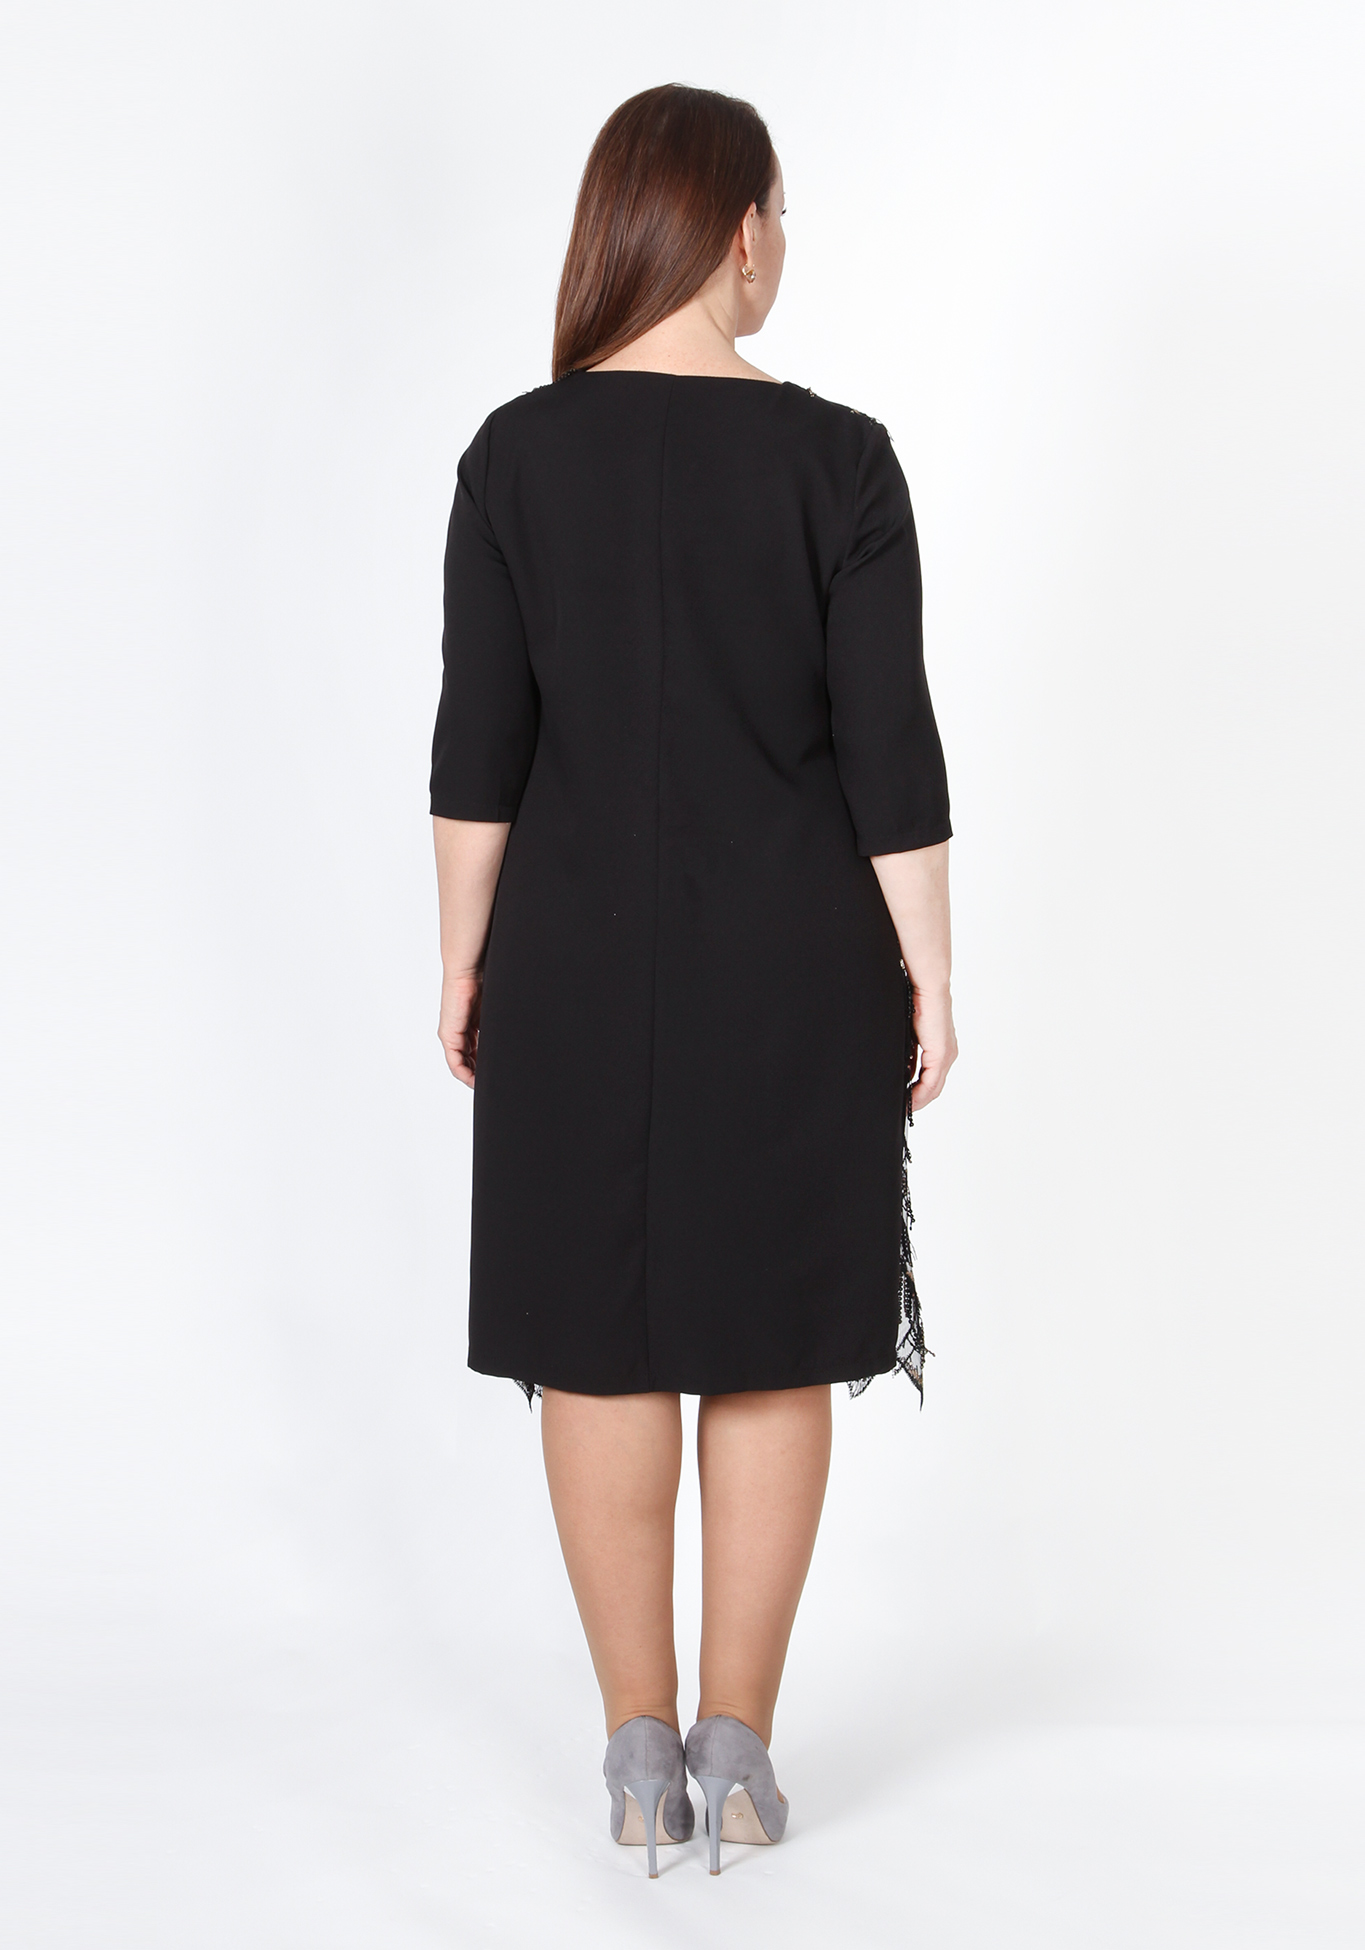 Платье «Звездные искры», размер 48, цвет черный - фото 2